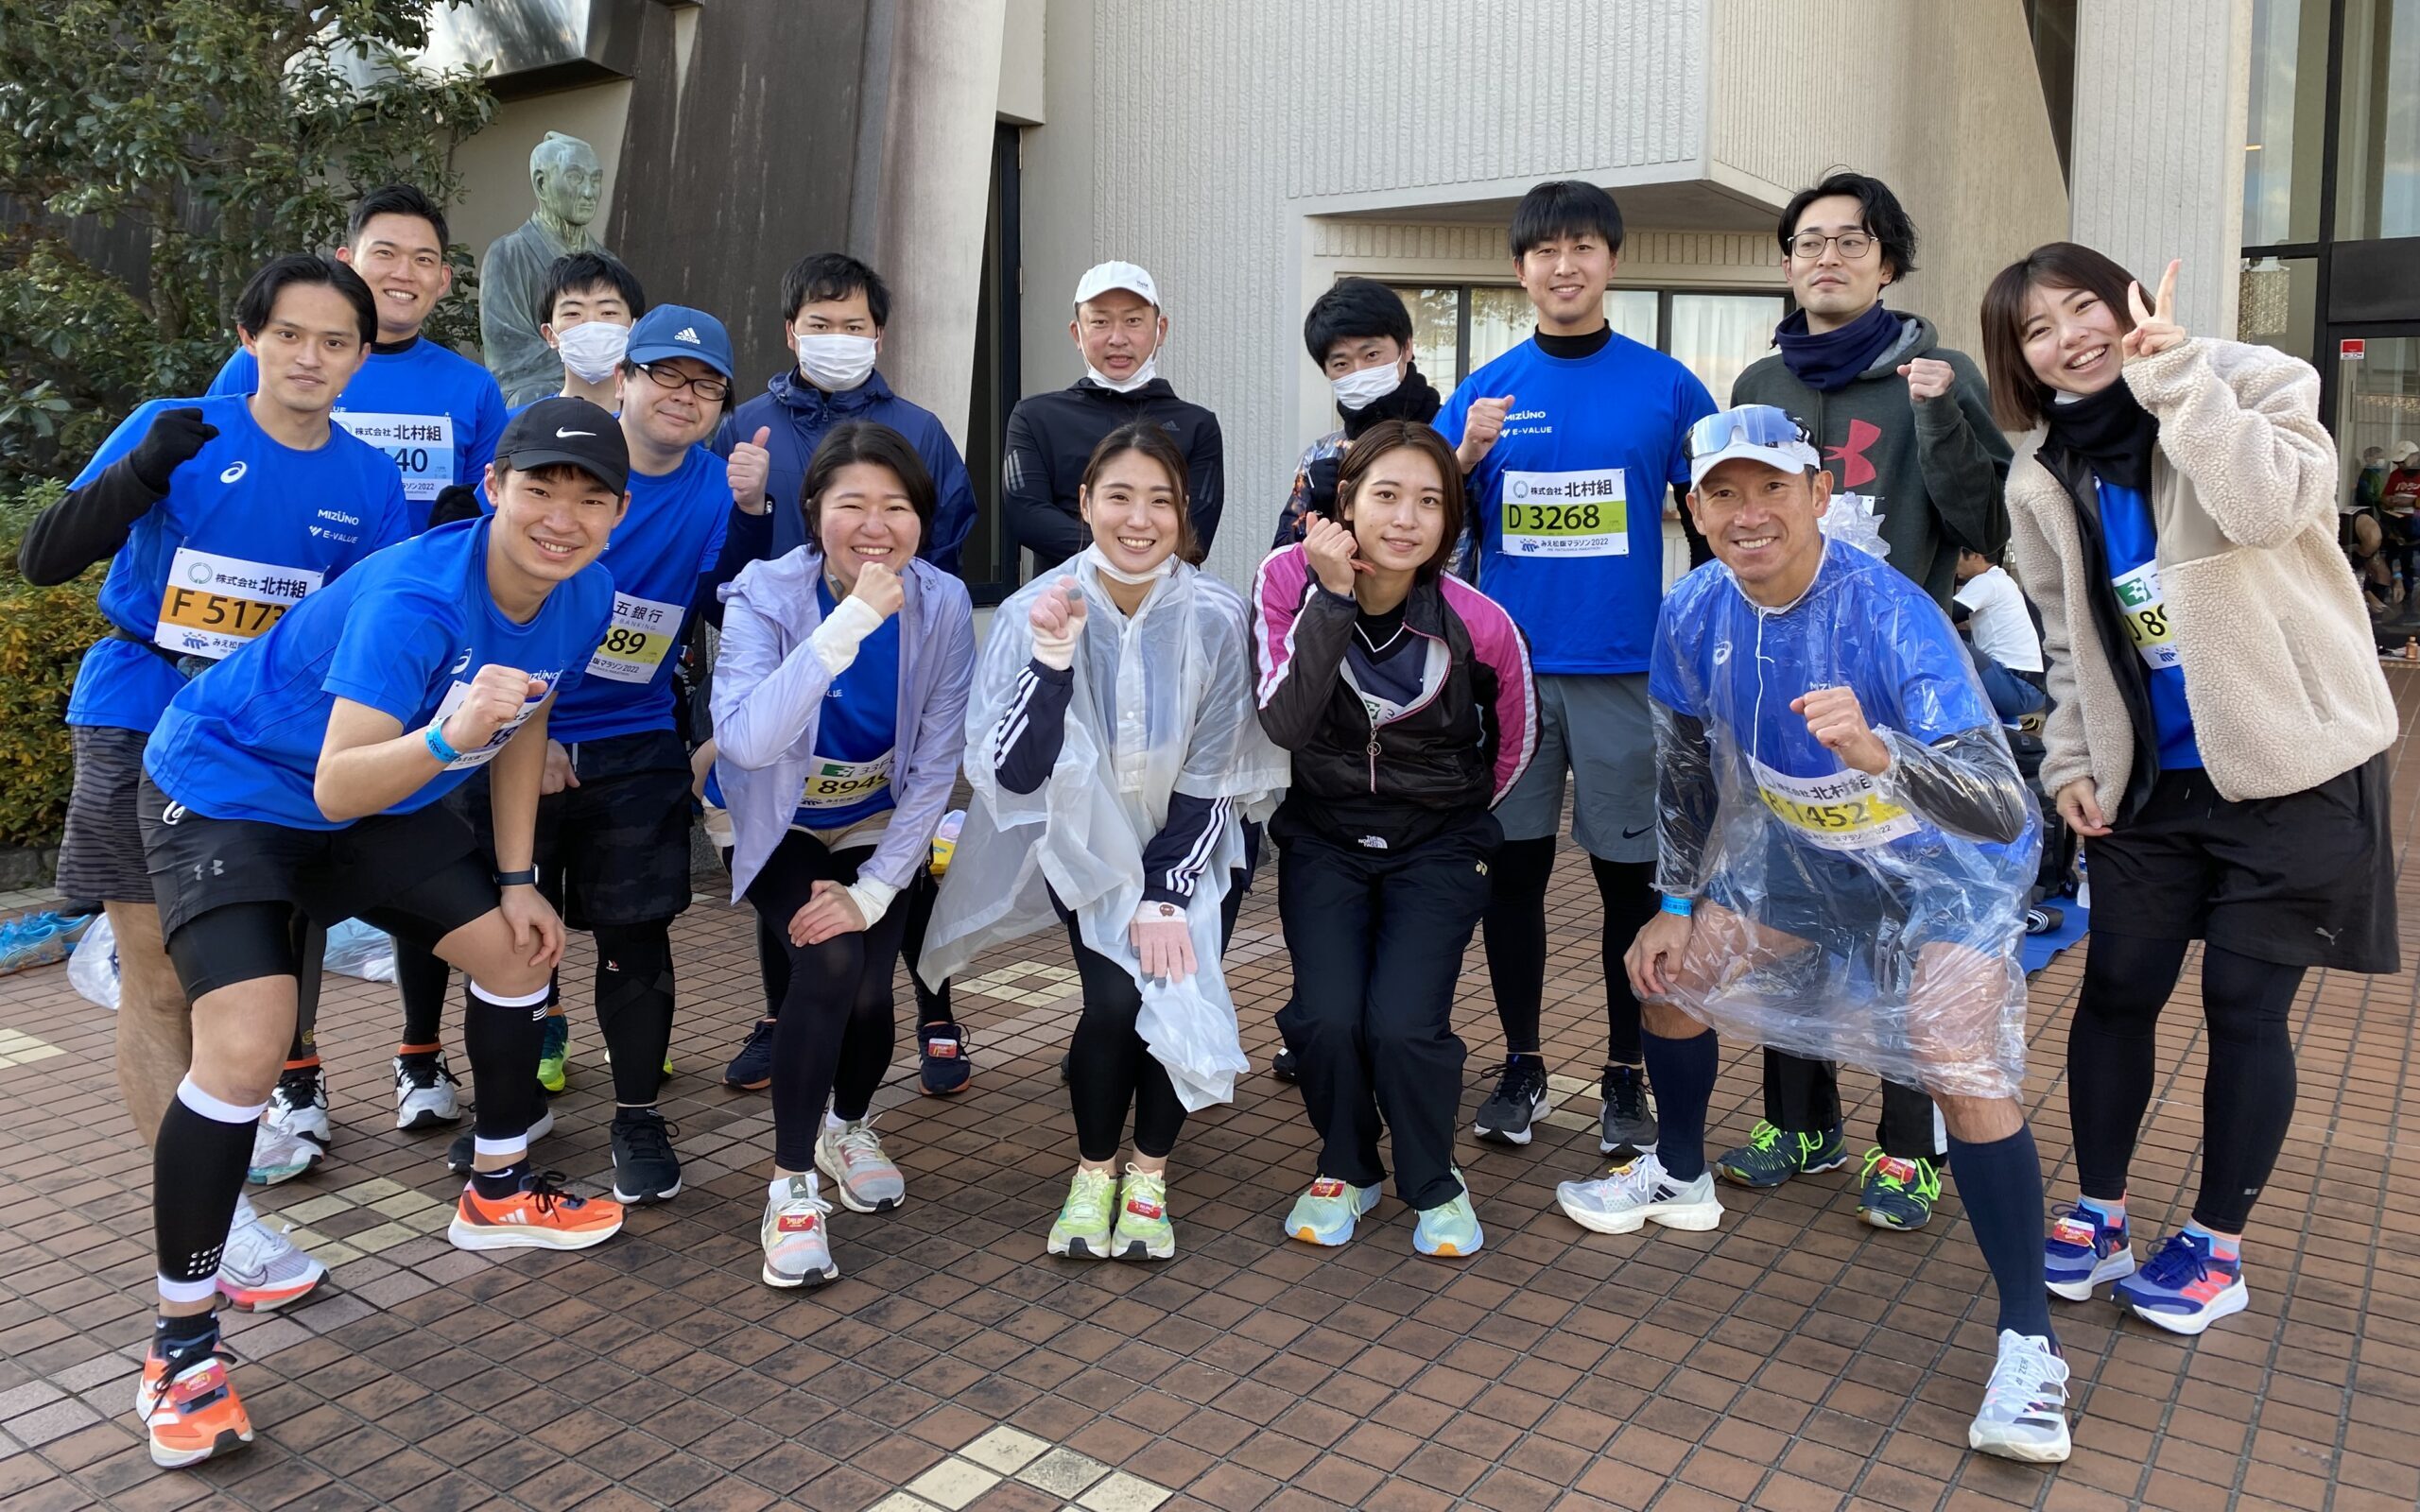 ～「みえ松阪マラソン2022」に弊社社員16名が参加しました～